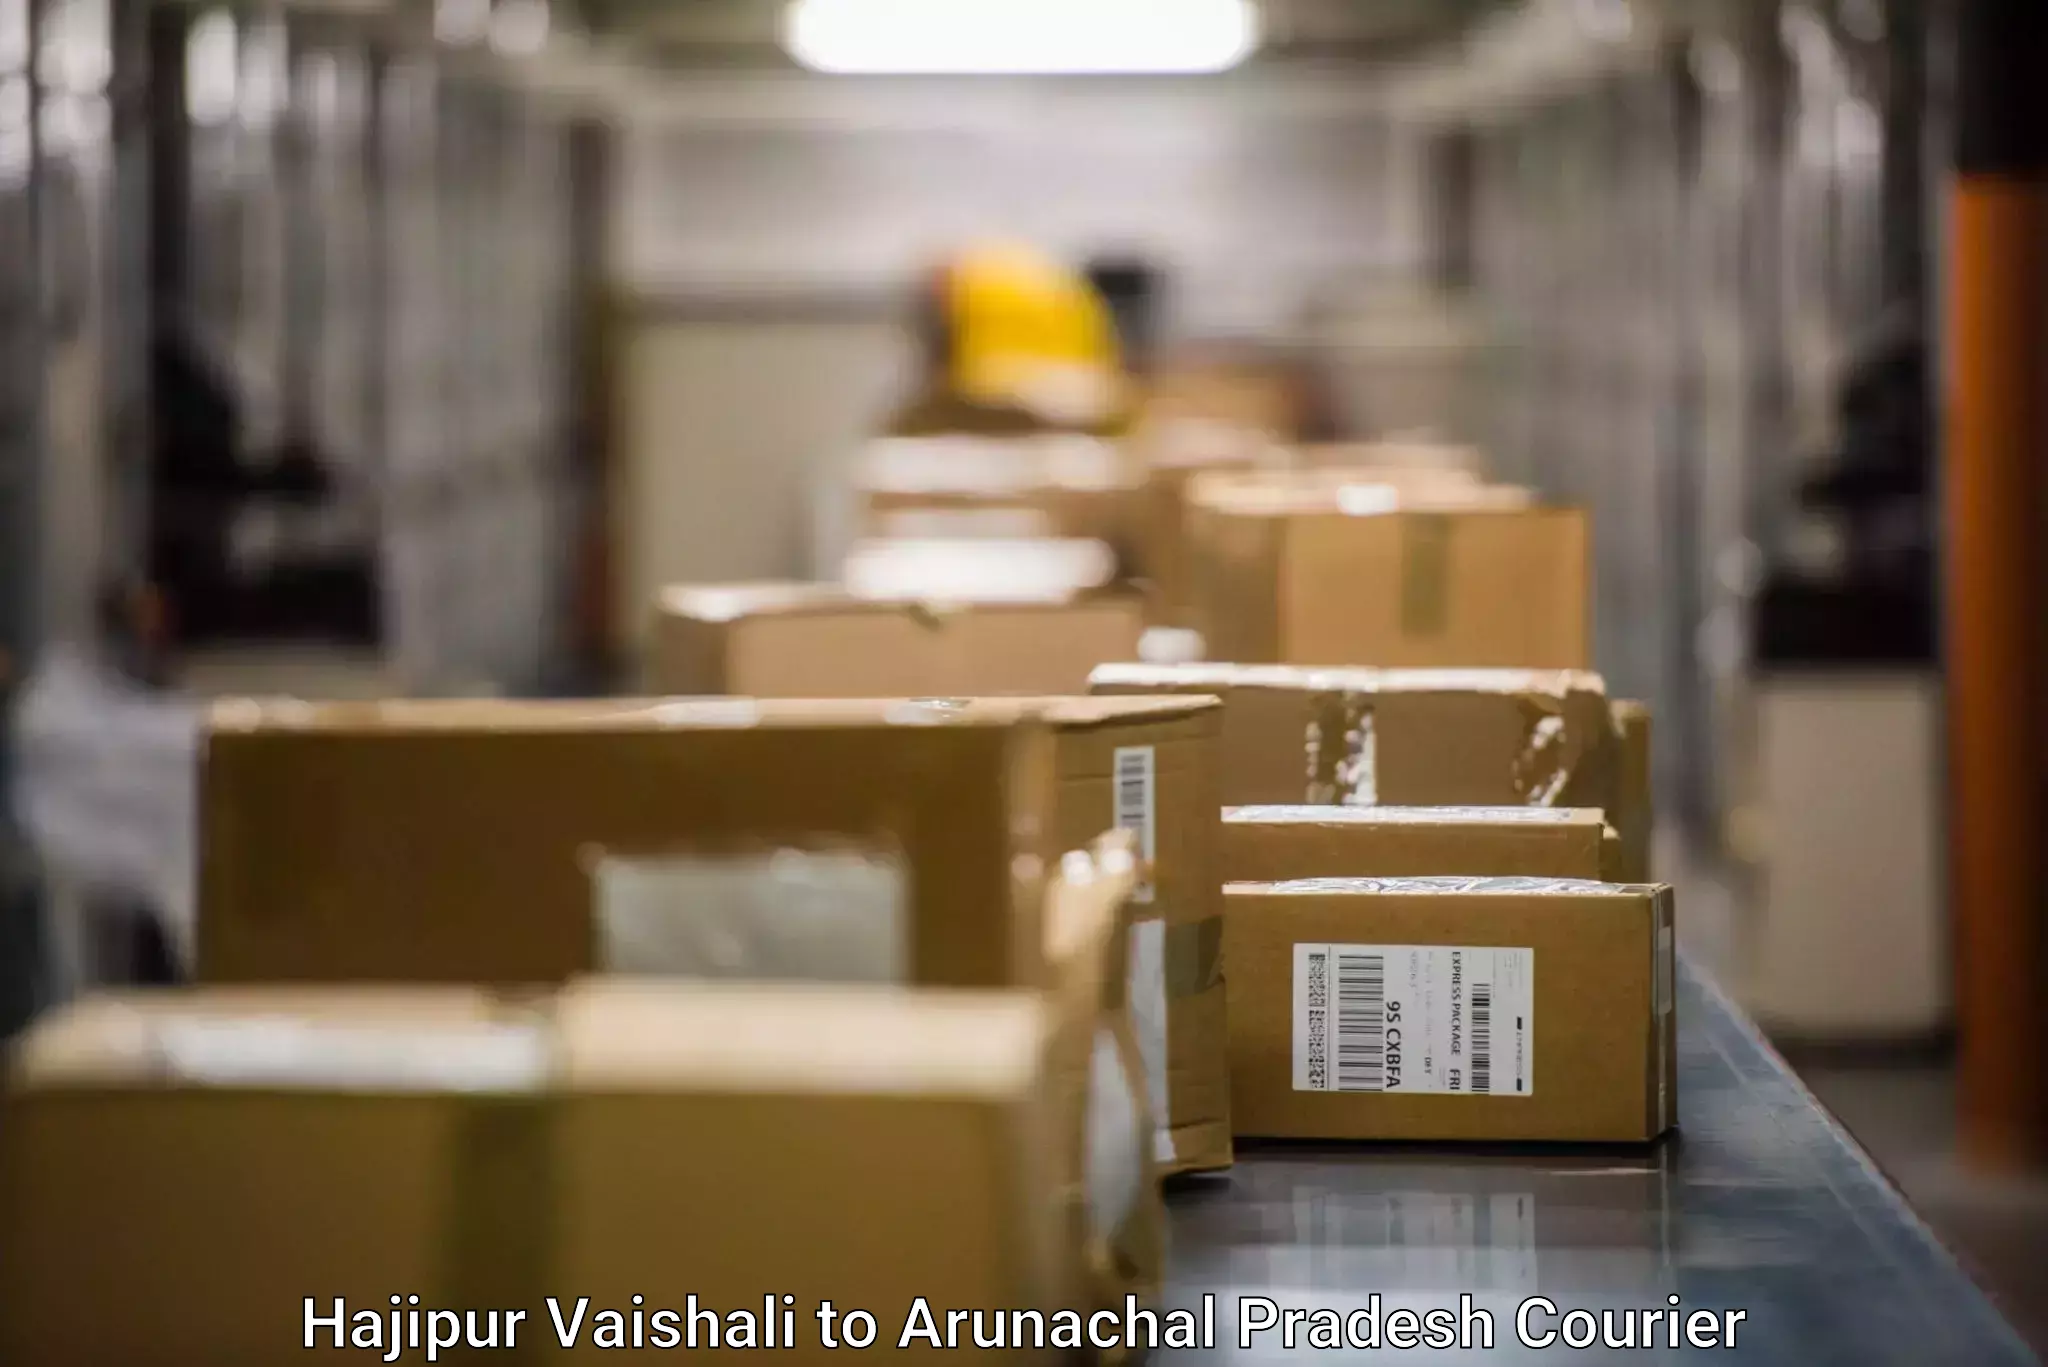 Express logistics providers Hajipur Vaishali to Lohit